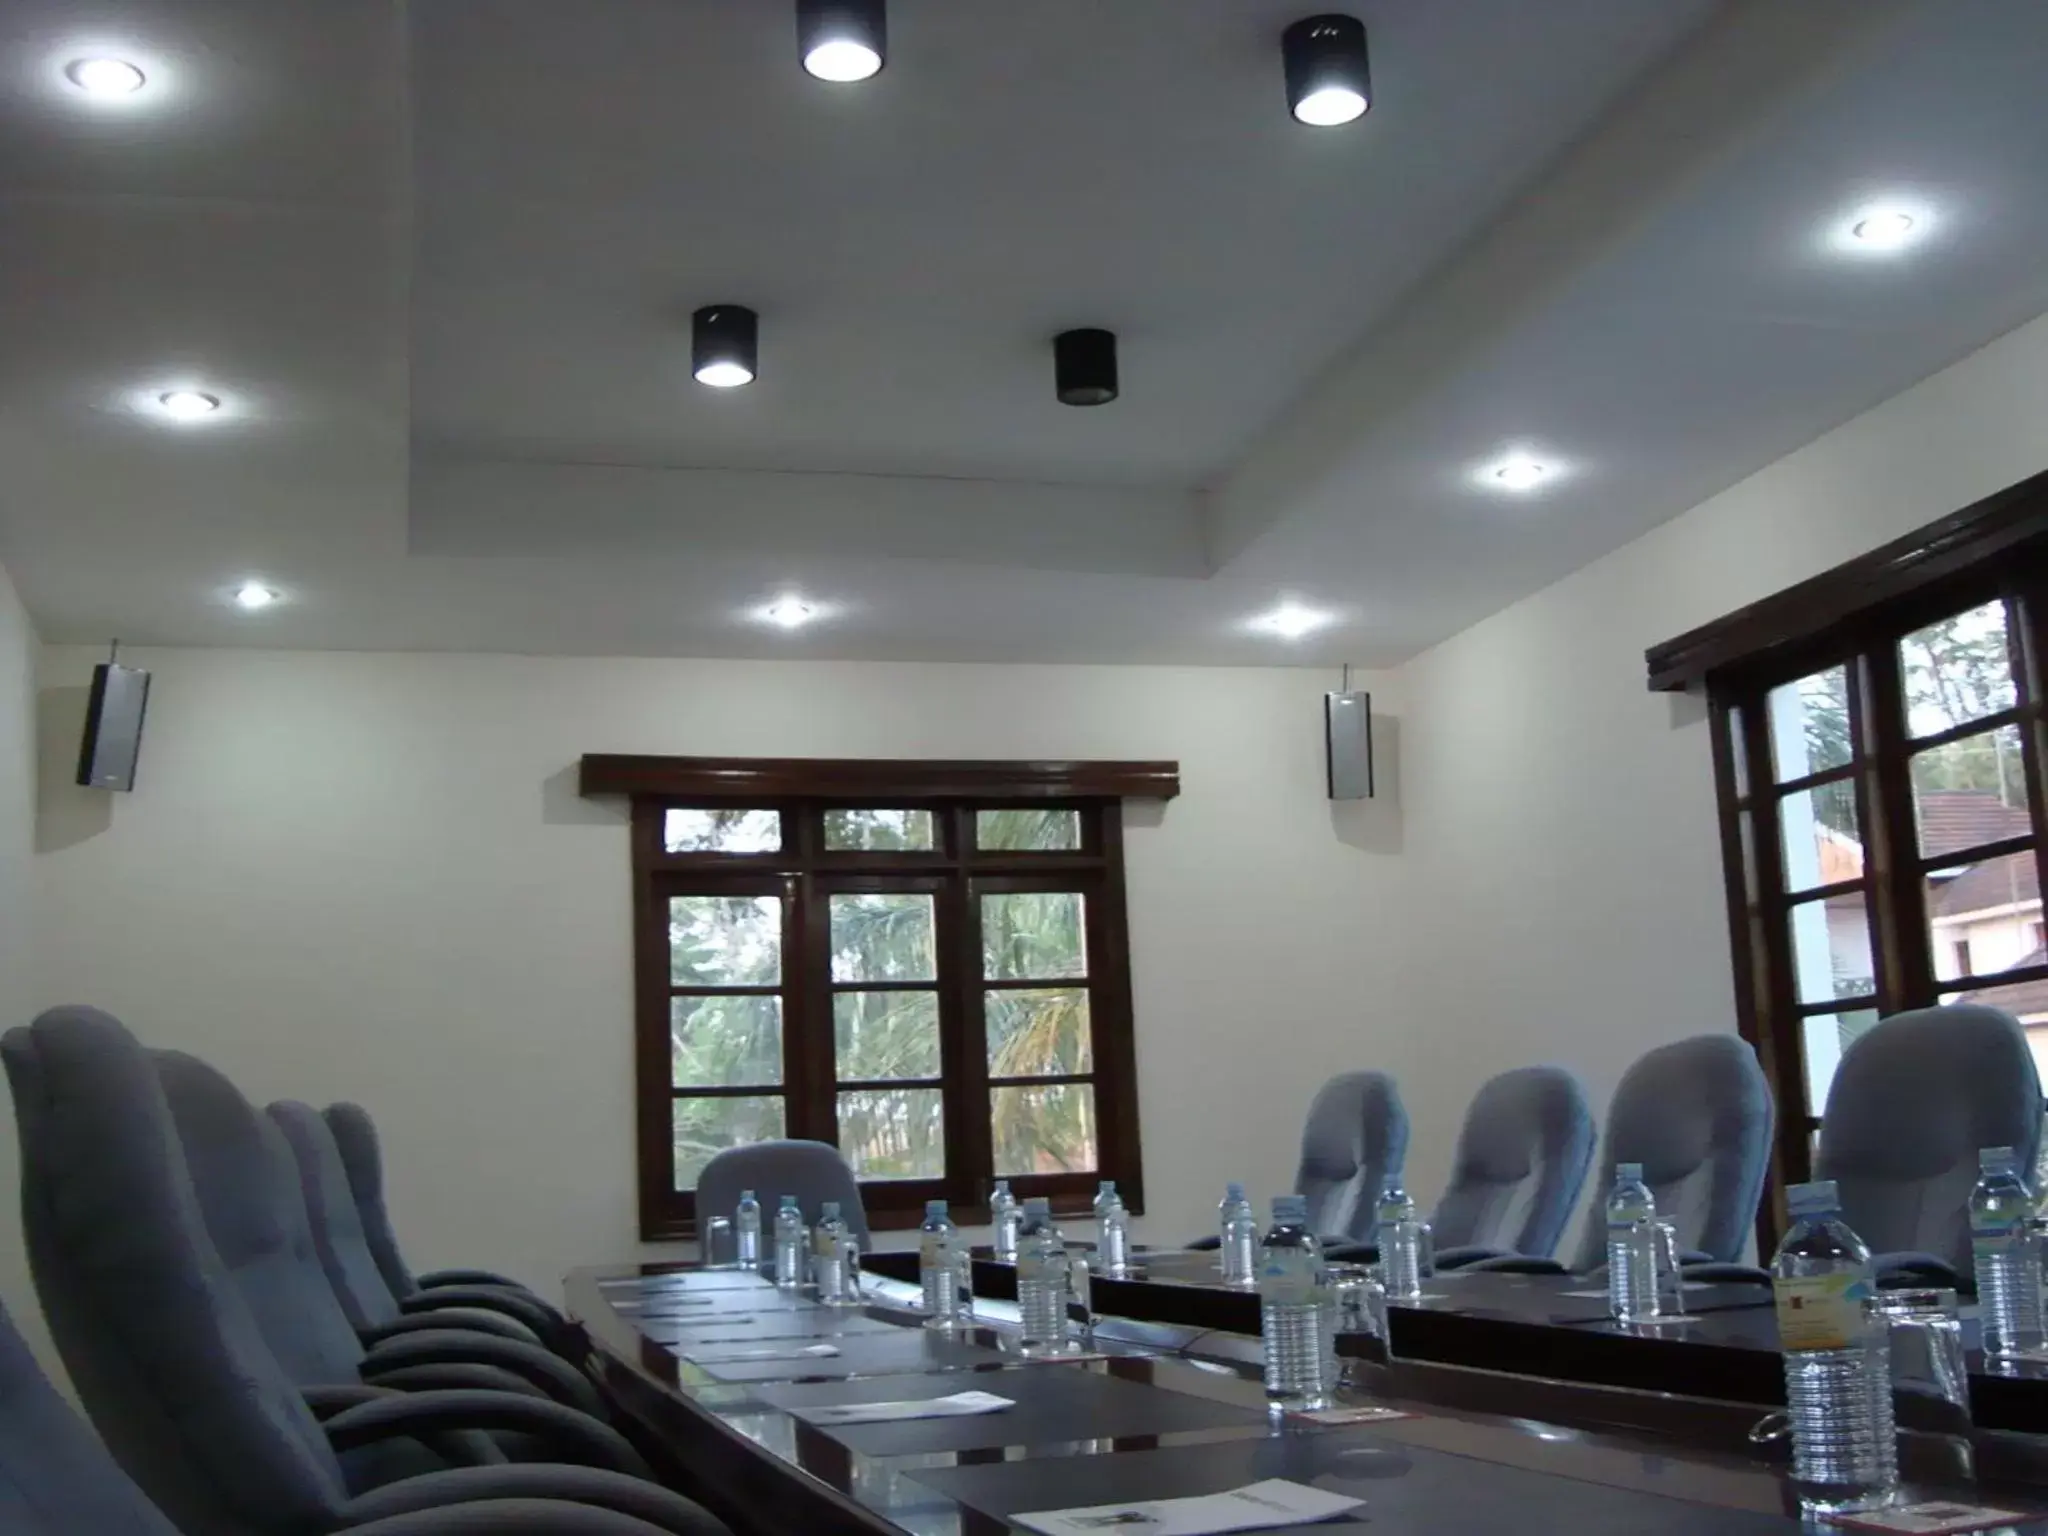 Meeting/conference room in Jinja Nile Resort